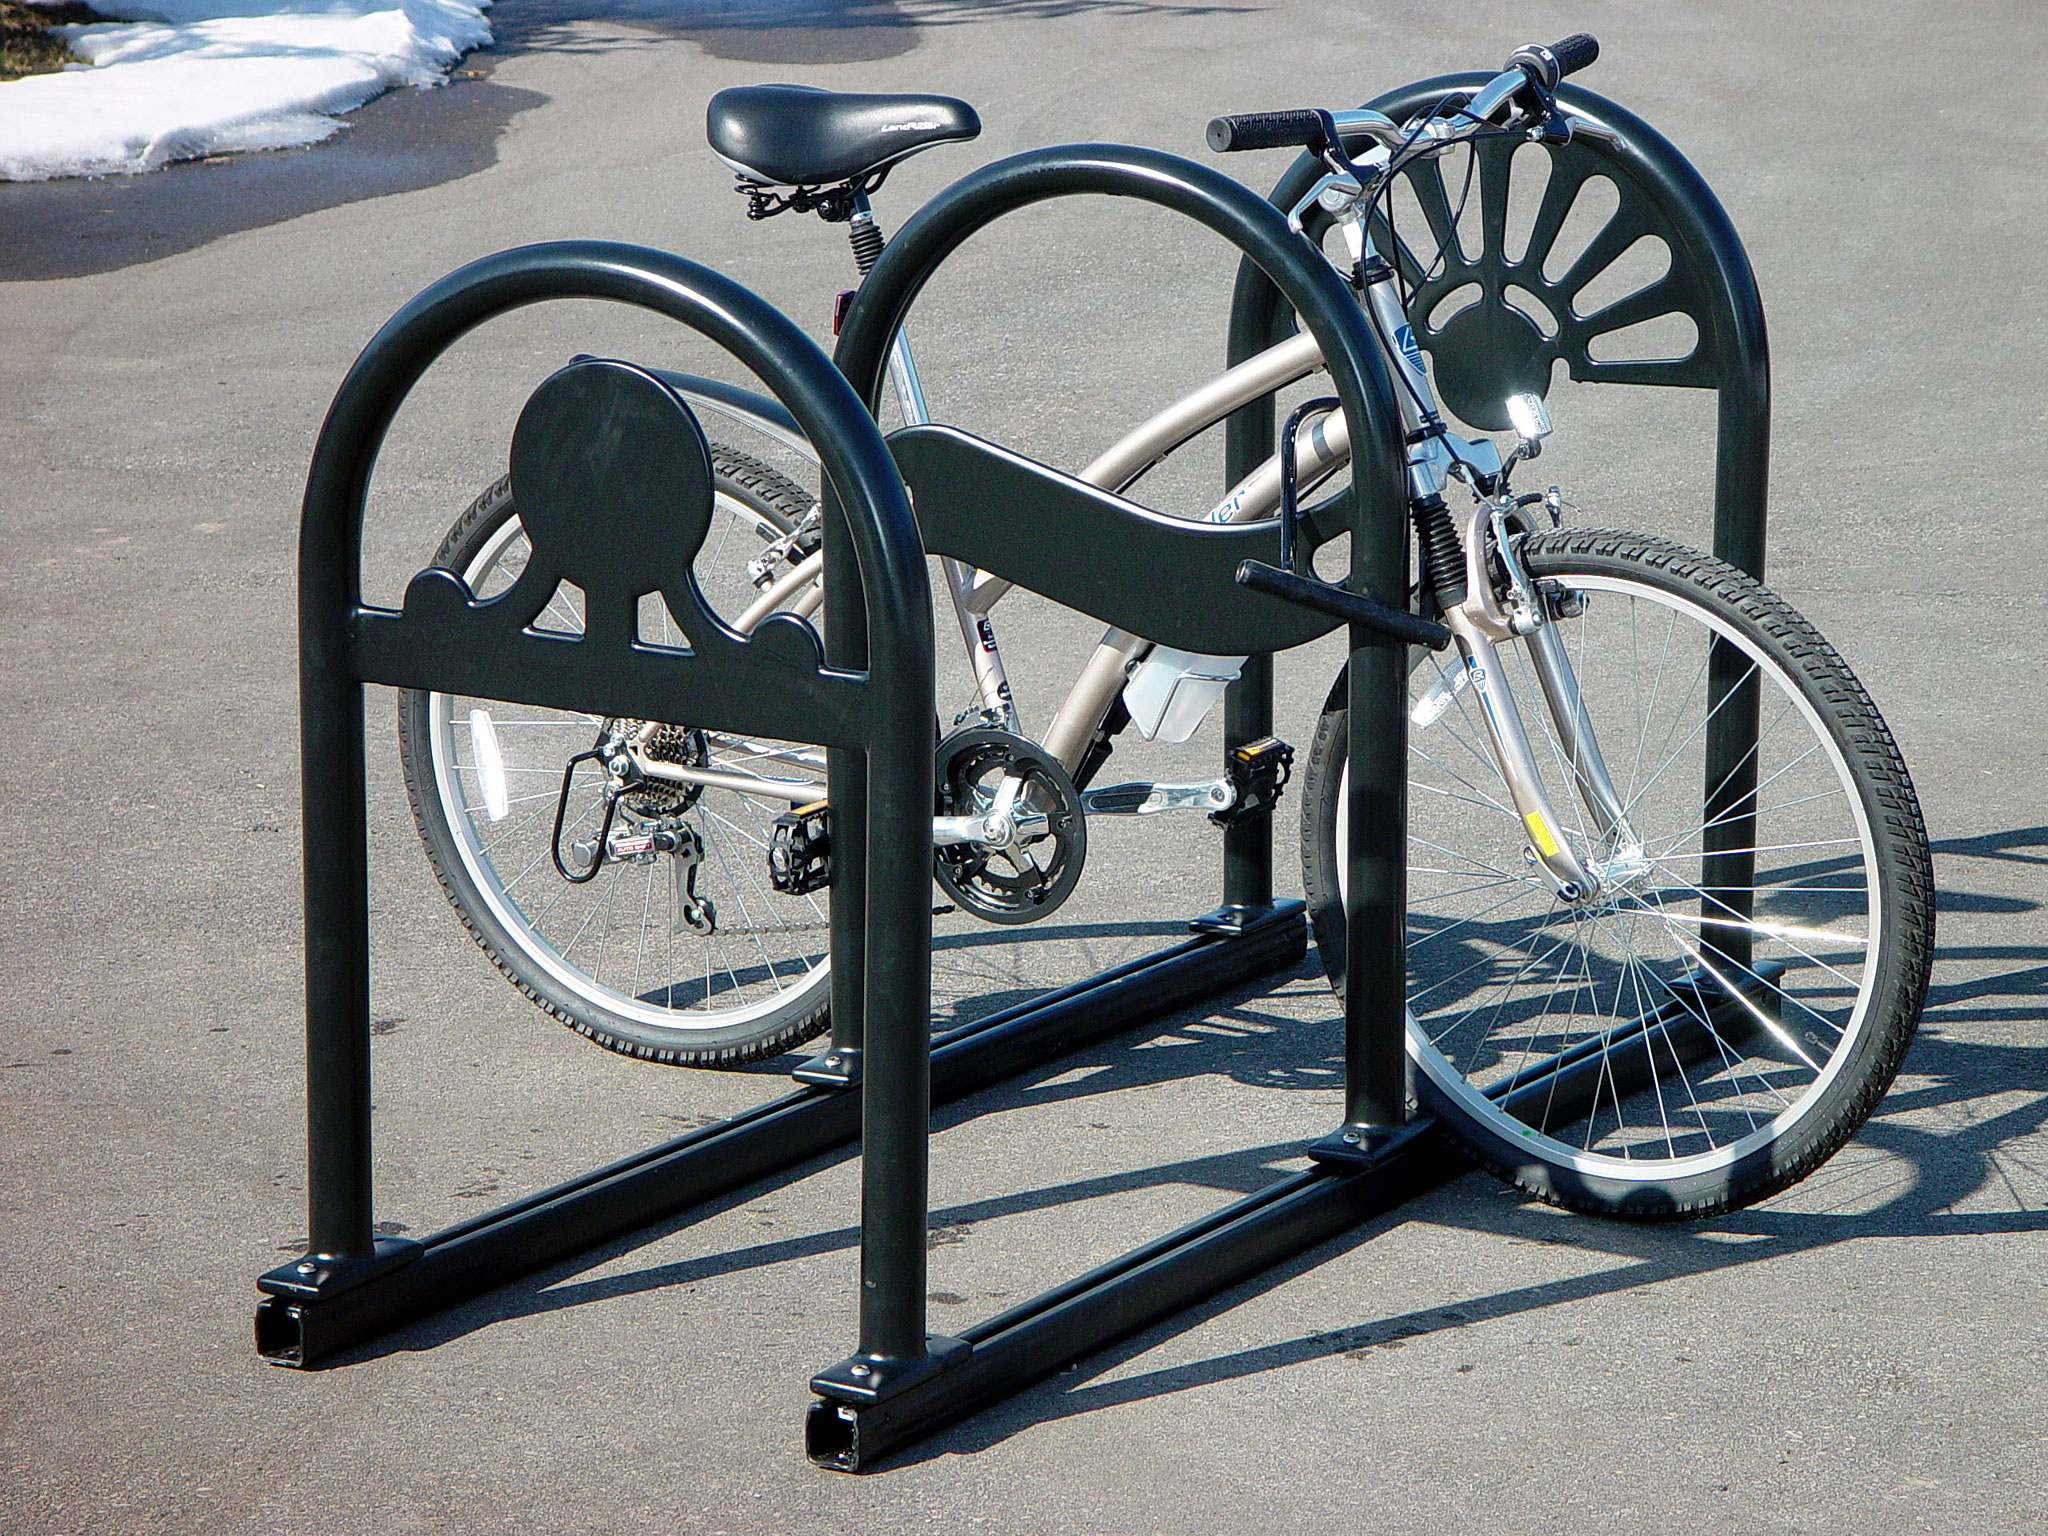 wald 582 folding rear bicycle basket